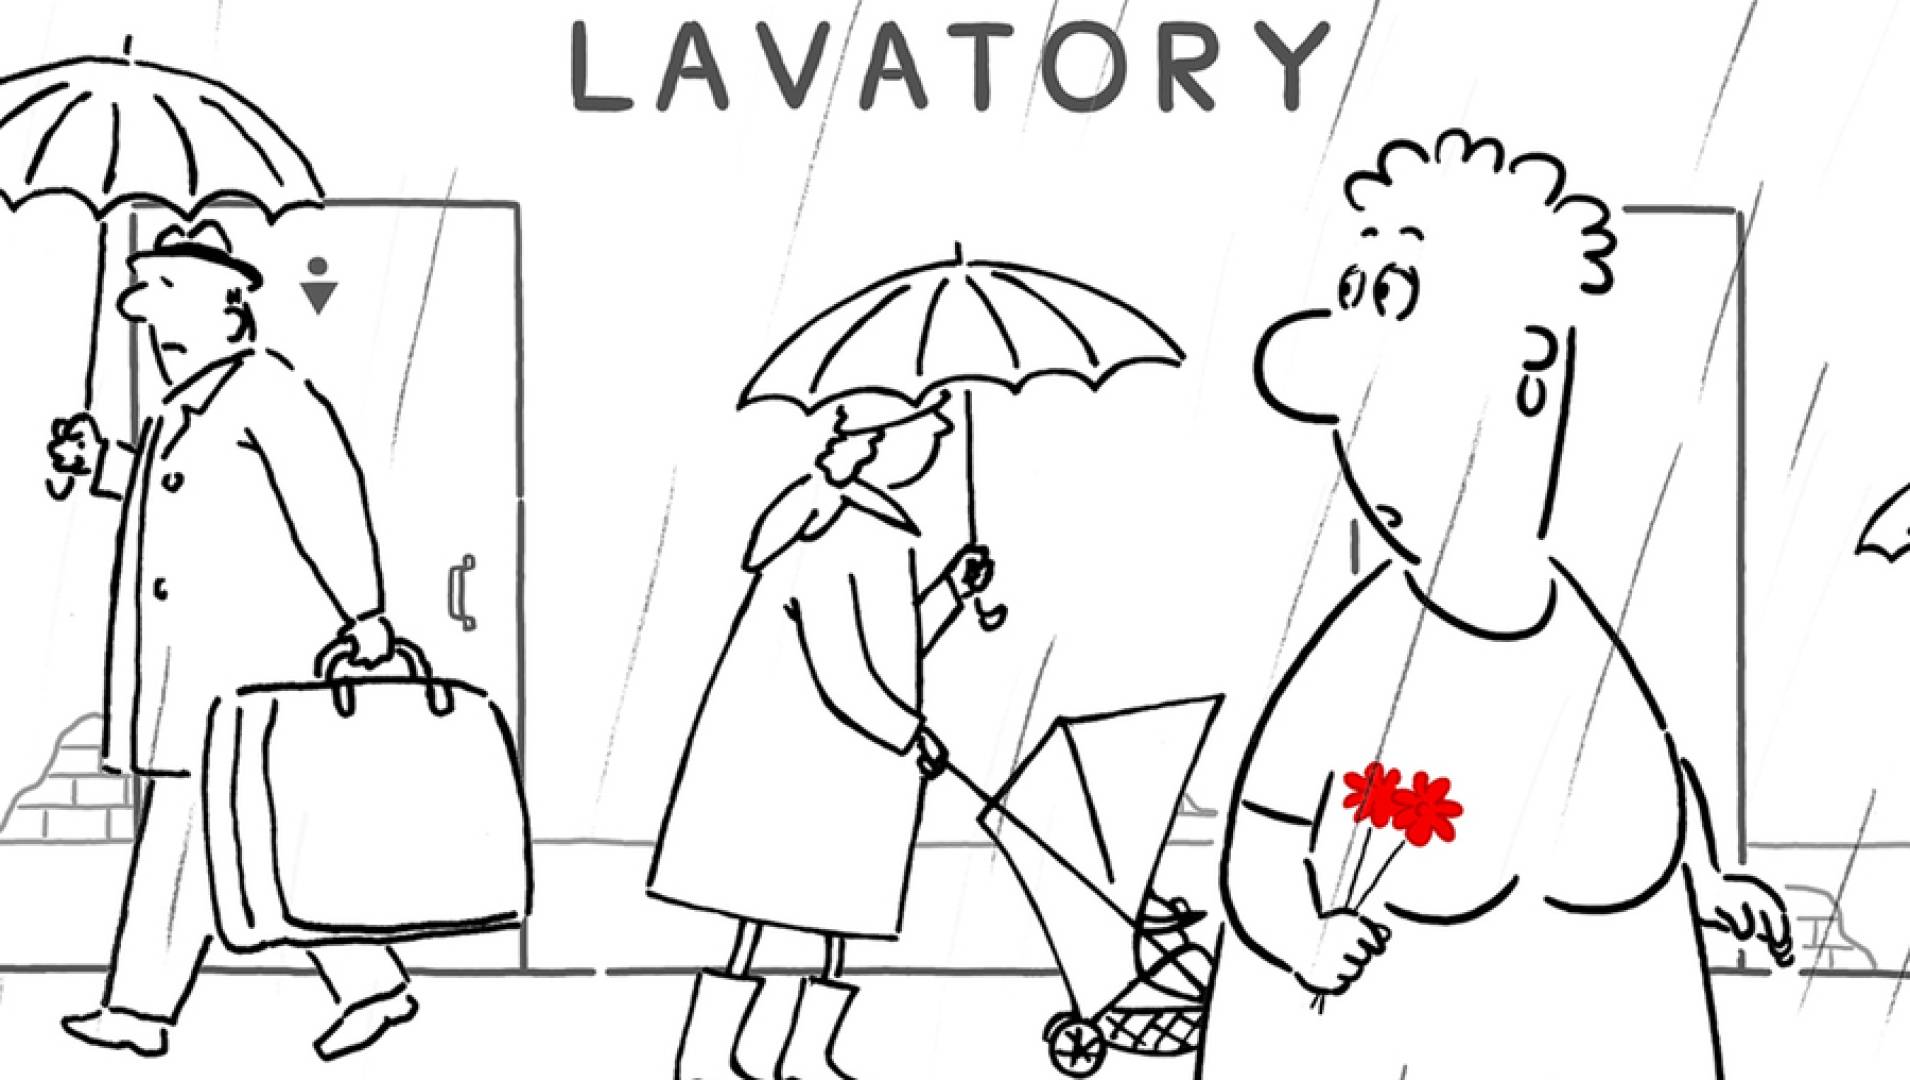 Любовная история (Lavatory Lovestory) - Анимационный фильм